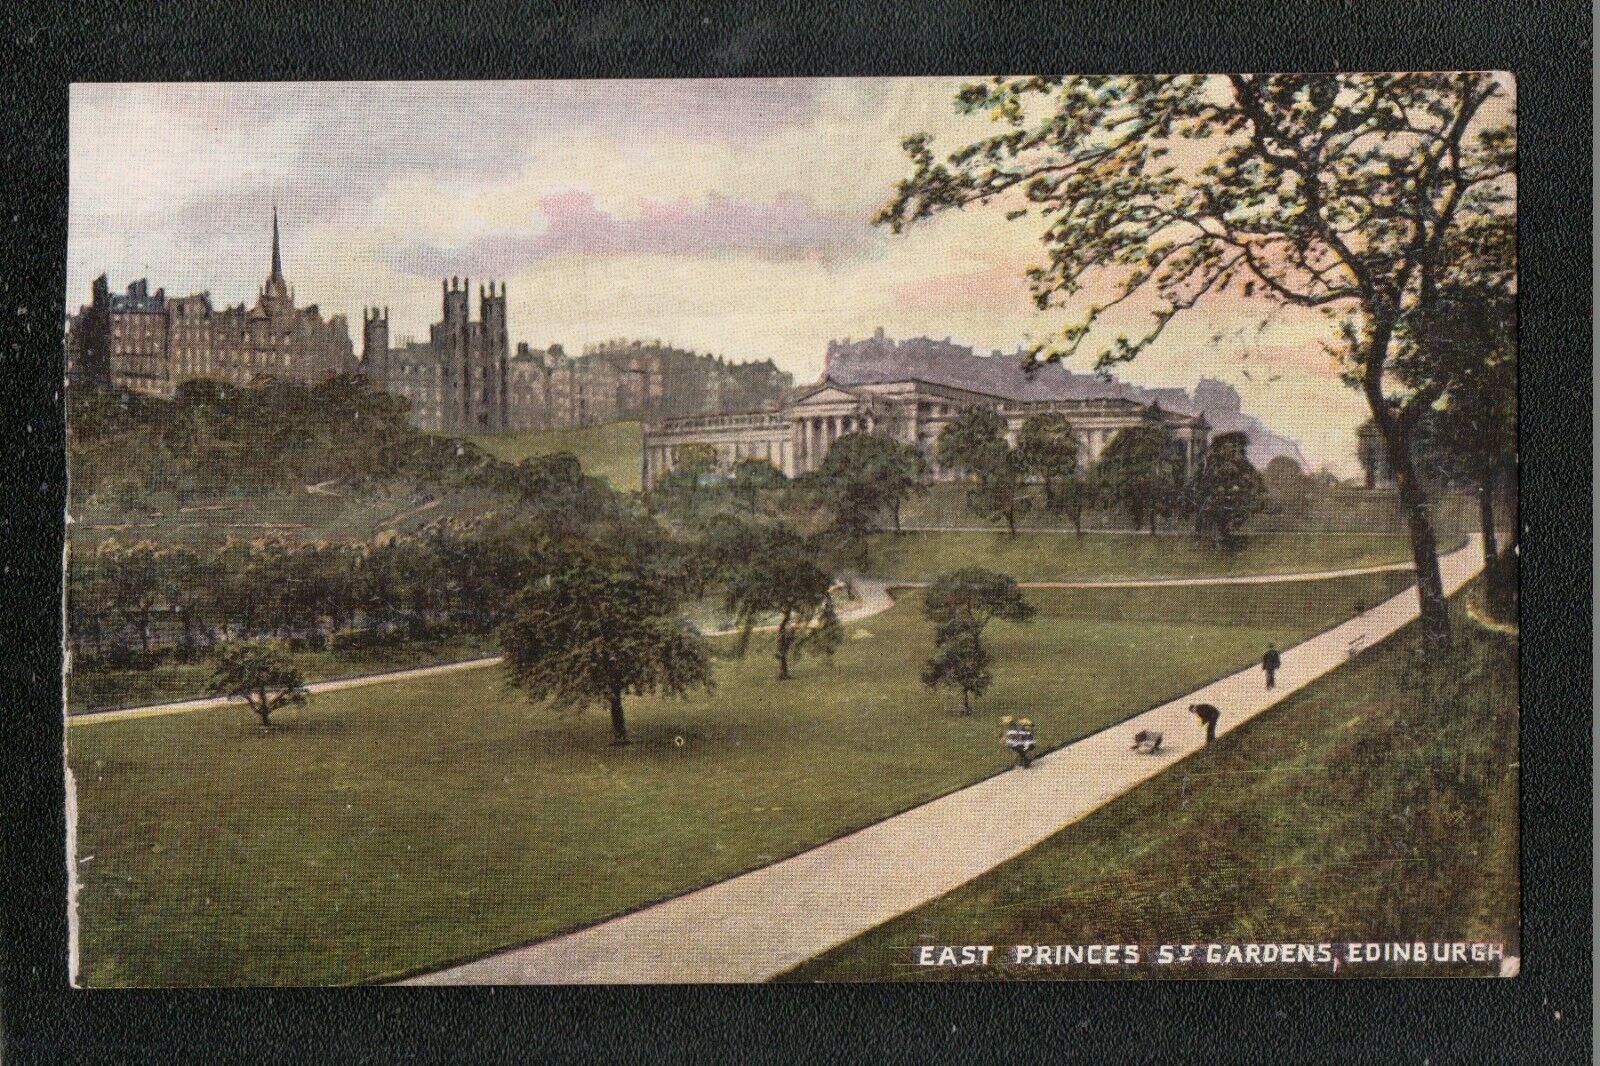 House Clearance - East Princess St Gardens Edinburgh 1905 Service ~ Yarm SO Postmark